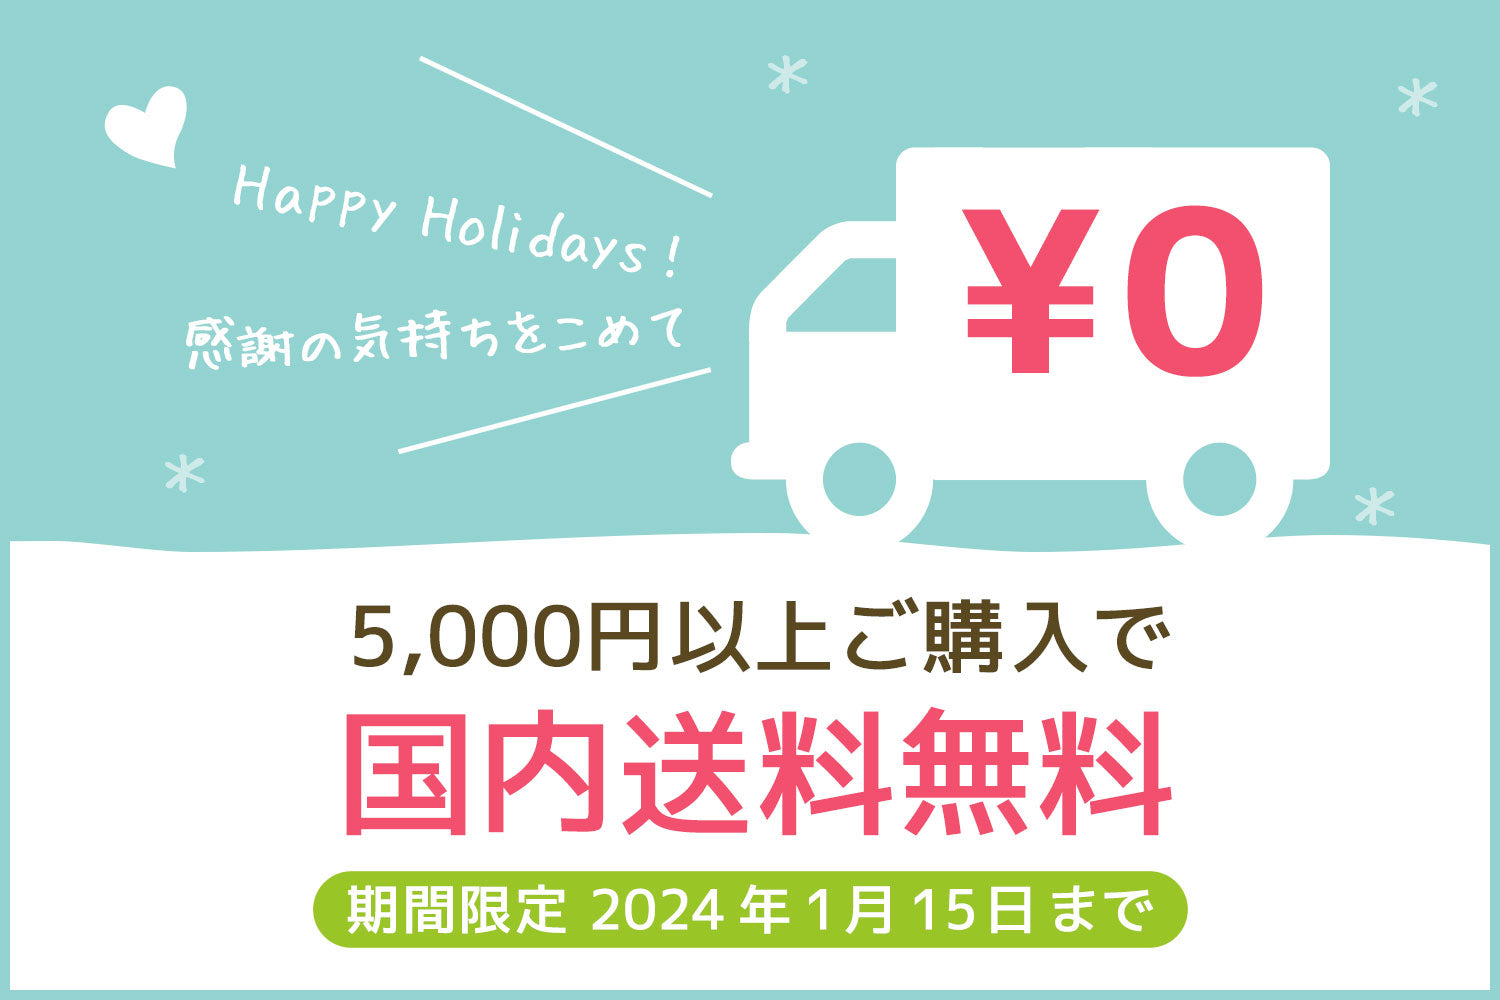 【期間限定】Happy Holidays ★ 5,000円以上で送料無料キャンペーン